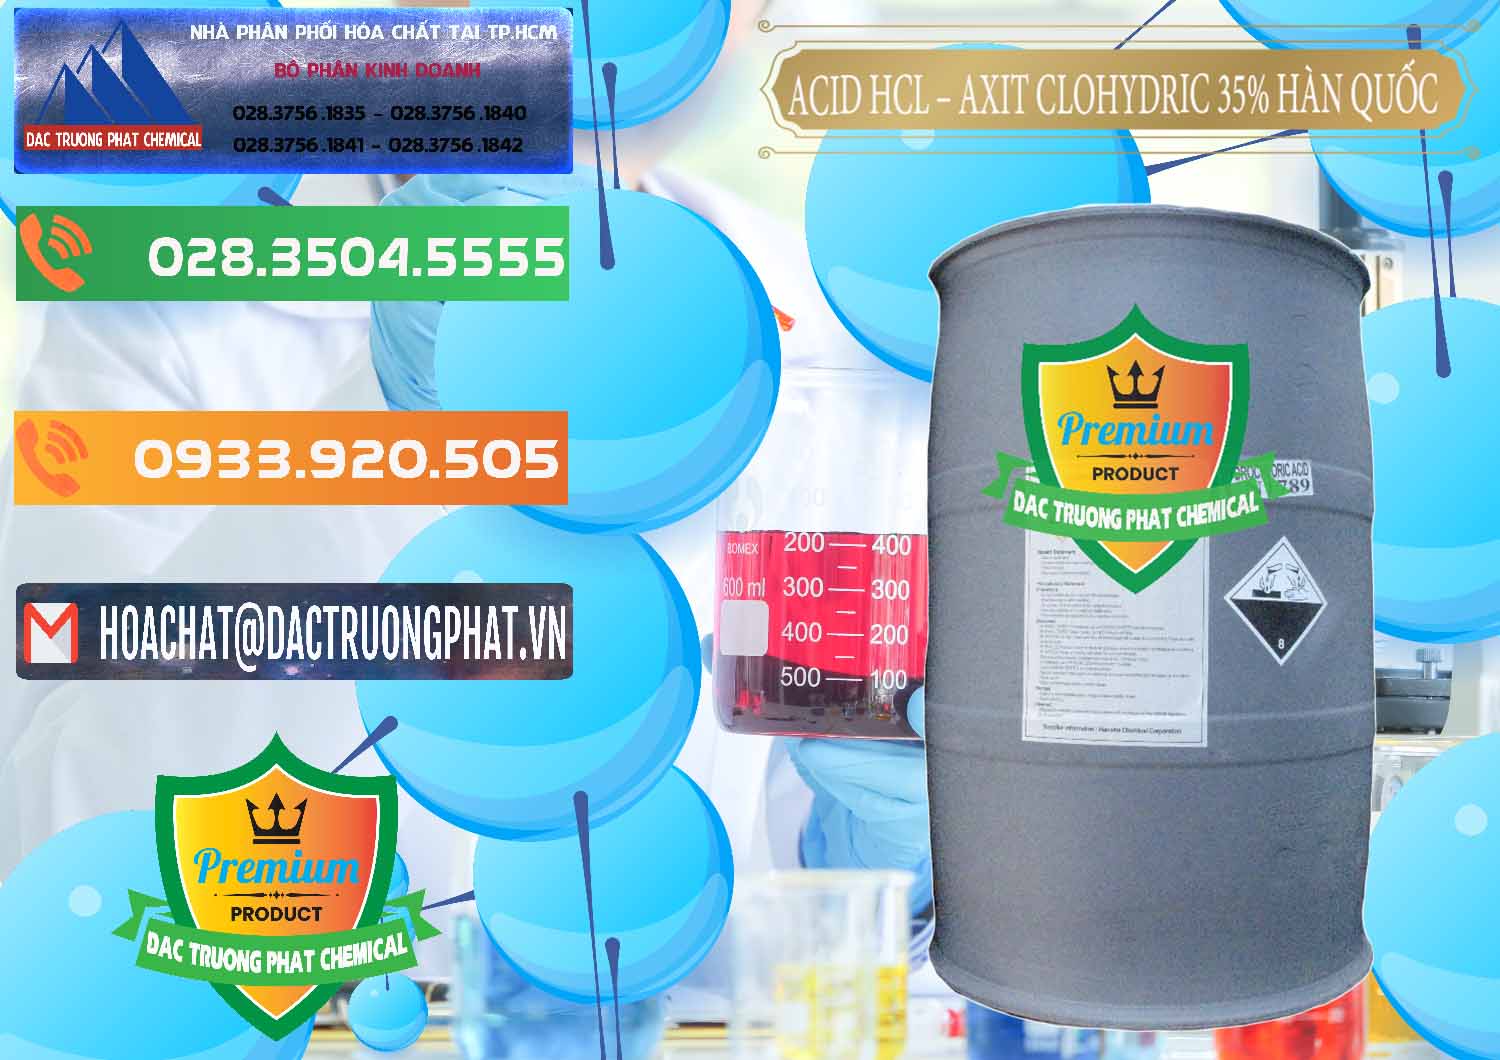 Nơi phân phối - bán Acid HCL - Axit Cohidric 35% Hàn Quốc Korea - 0011 - Nơi chuyên cung ứng - phân phối hóa chất tại TP.HCM - hoachatxulynuoc.com.vn